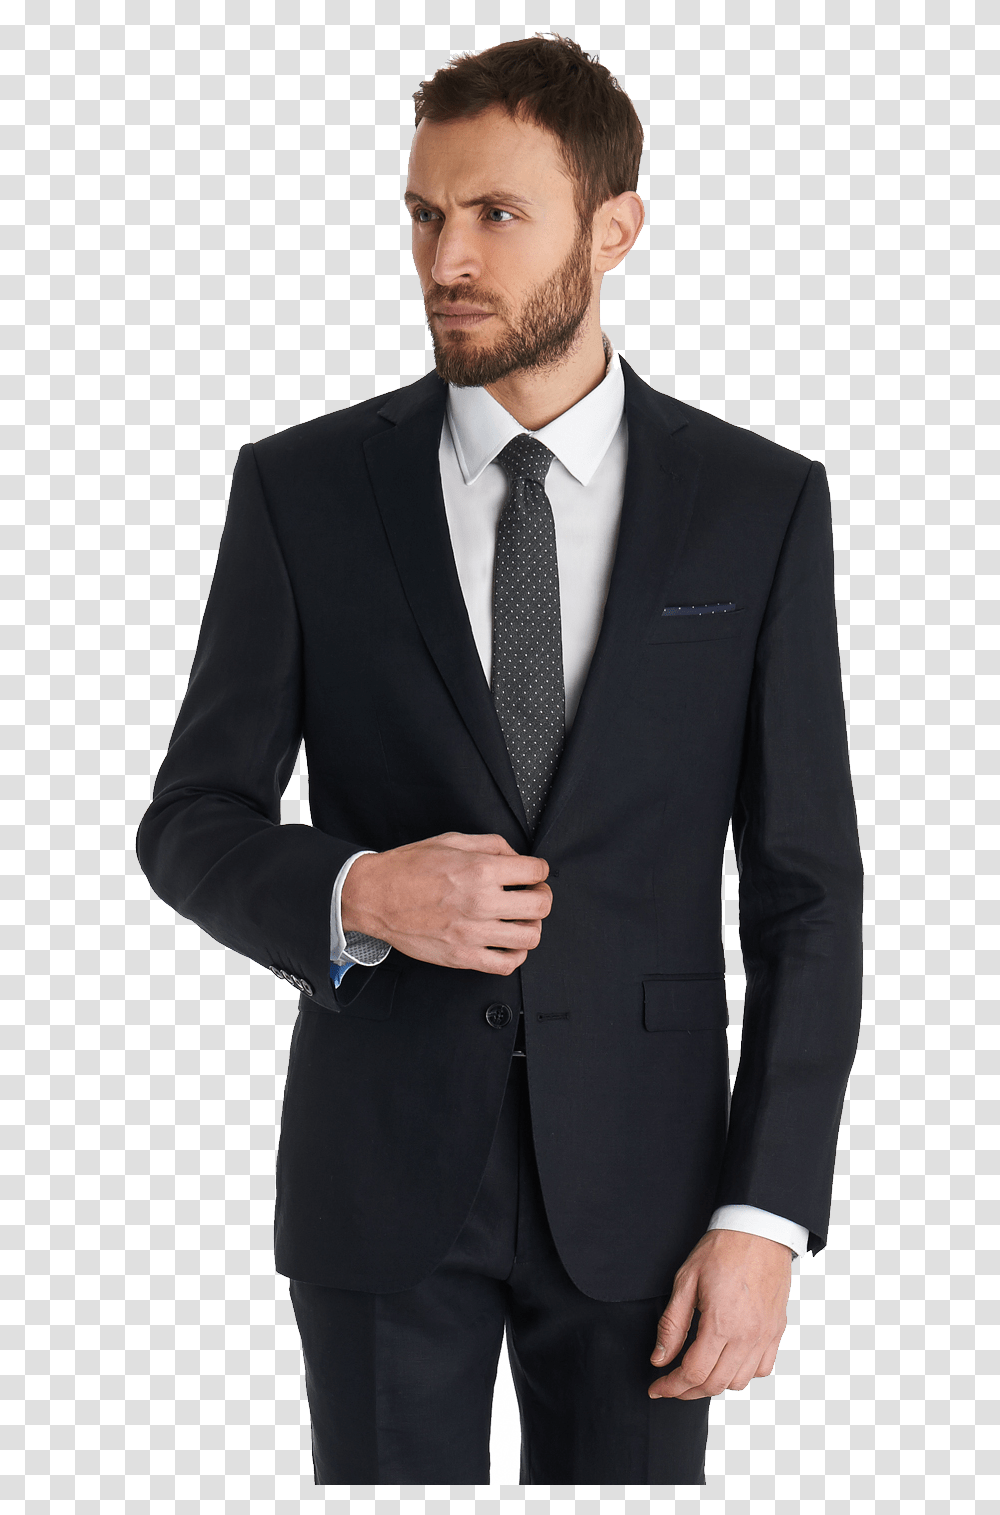 Suit Clipart Images Coat Pant Men, Apparel, Overcoat, Tie Transparent Png